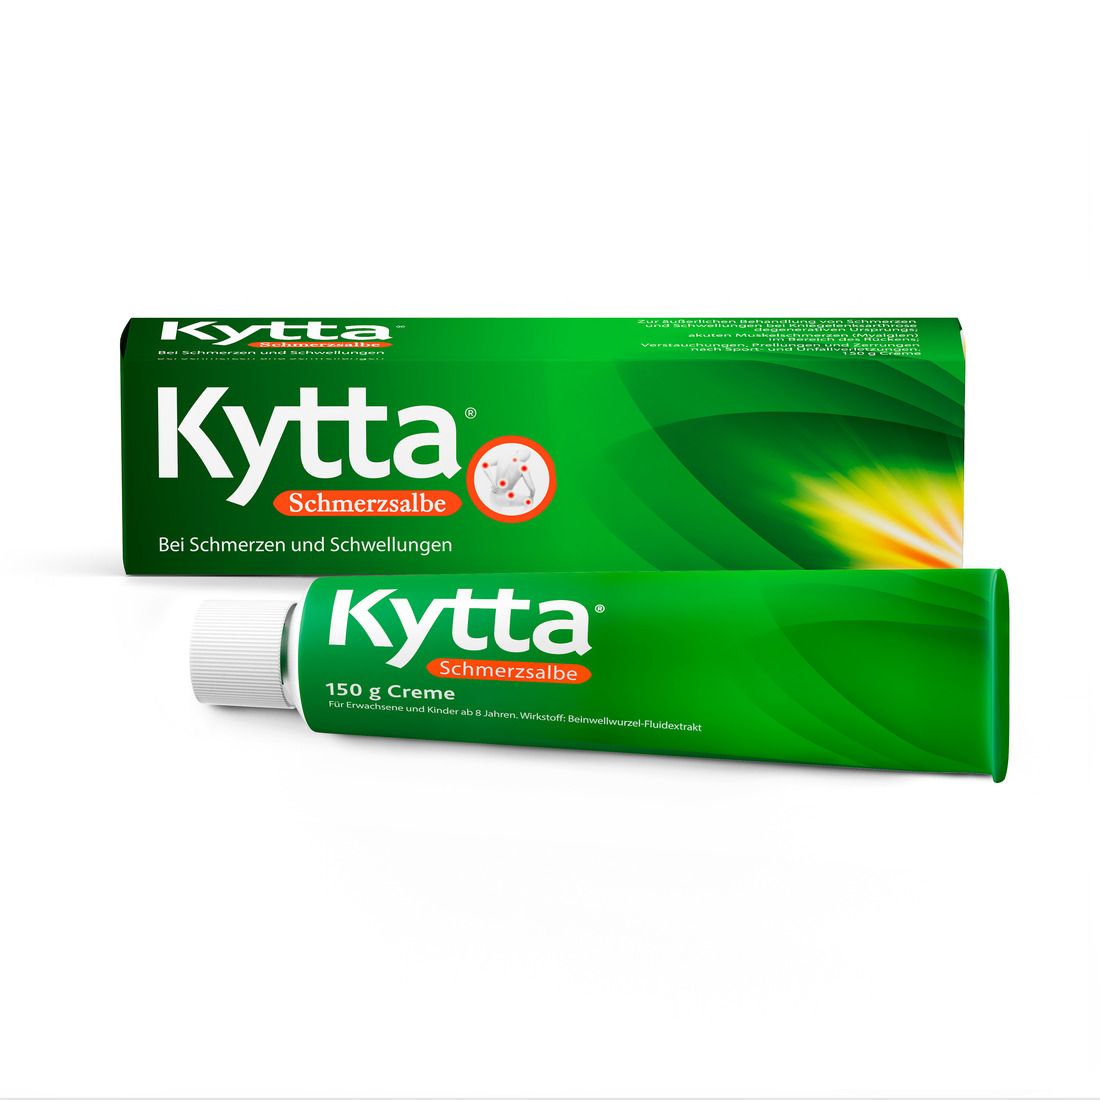 Kytta® Schmerzsalbe - Jetzt 15 % Rabatt sichern* mit kytta15